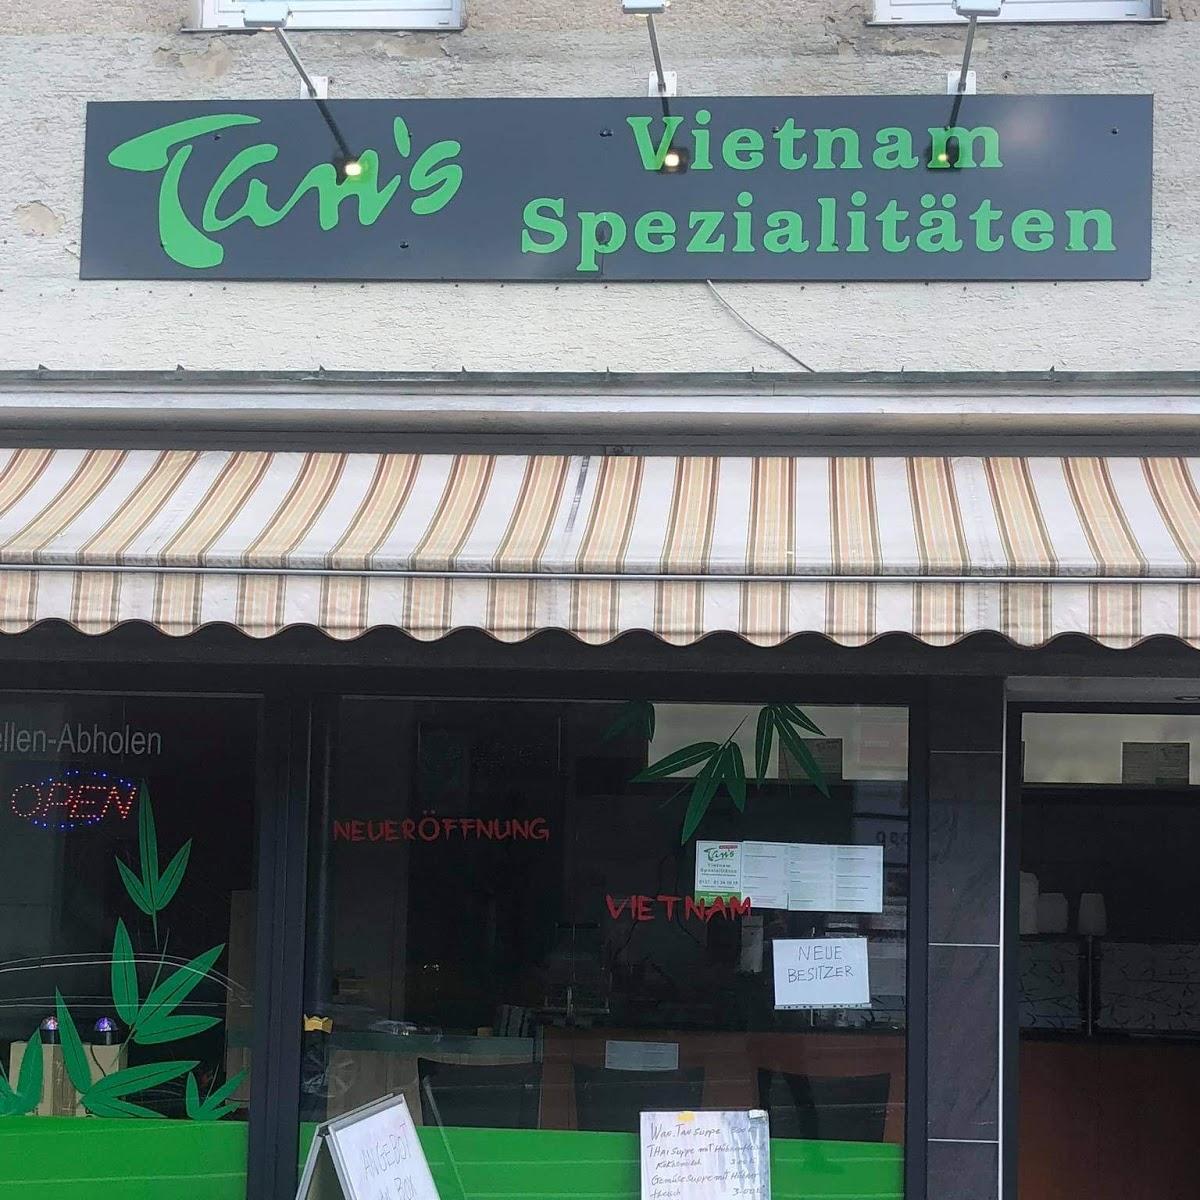 Restaurant "Asia Imbiss Tan Asiatische Spezialitäten NEU Eröffnung!!!!" in Geislingen an der Steige